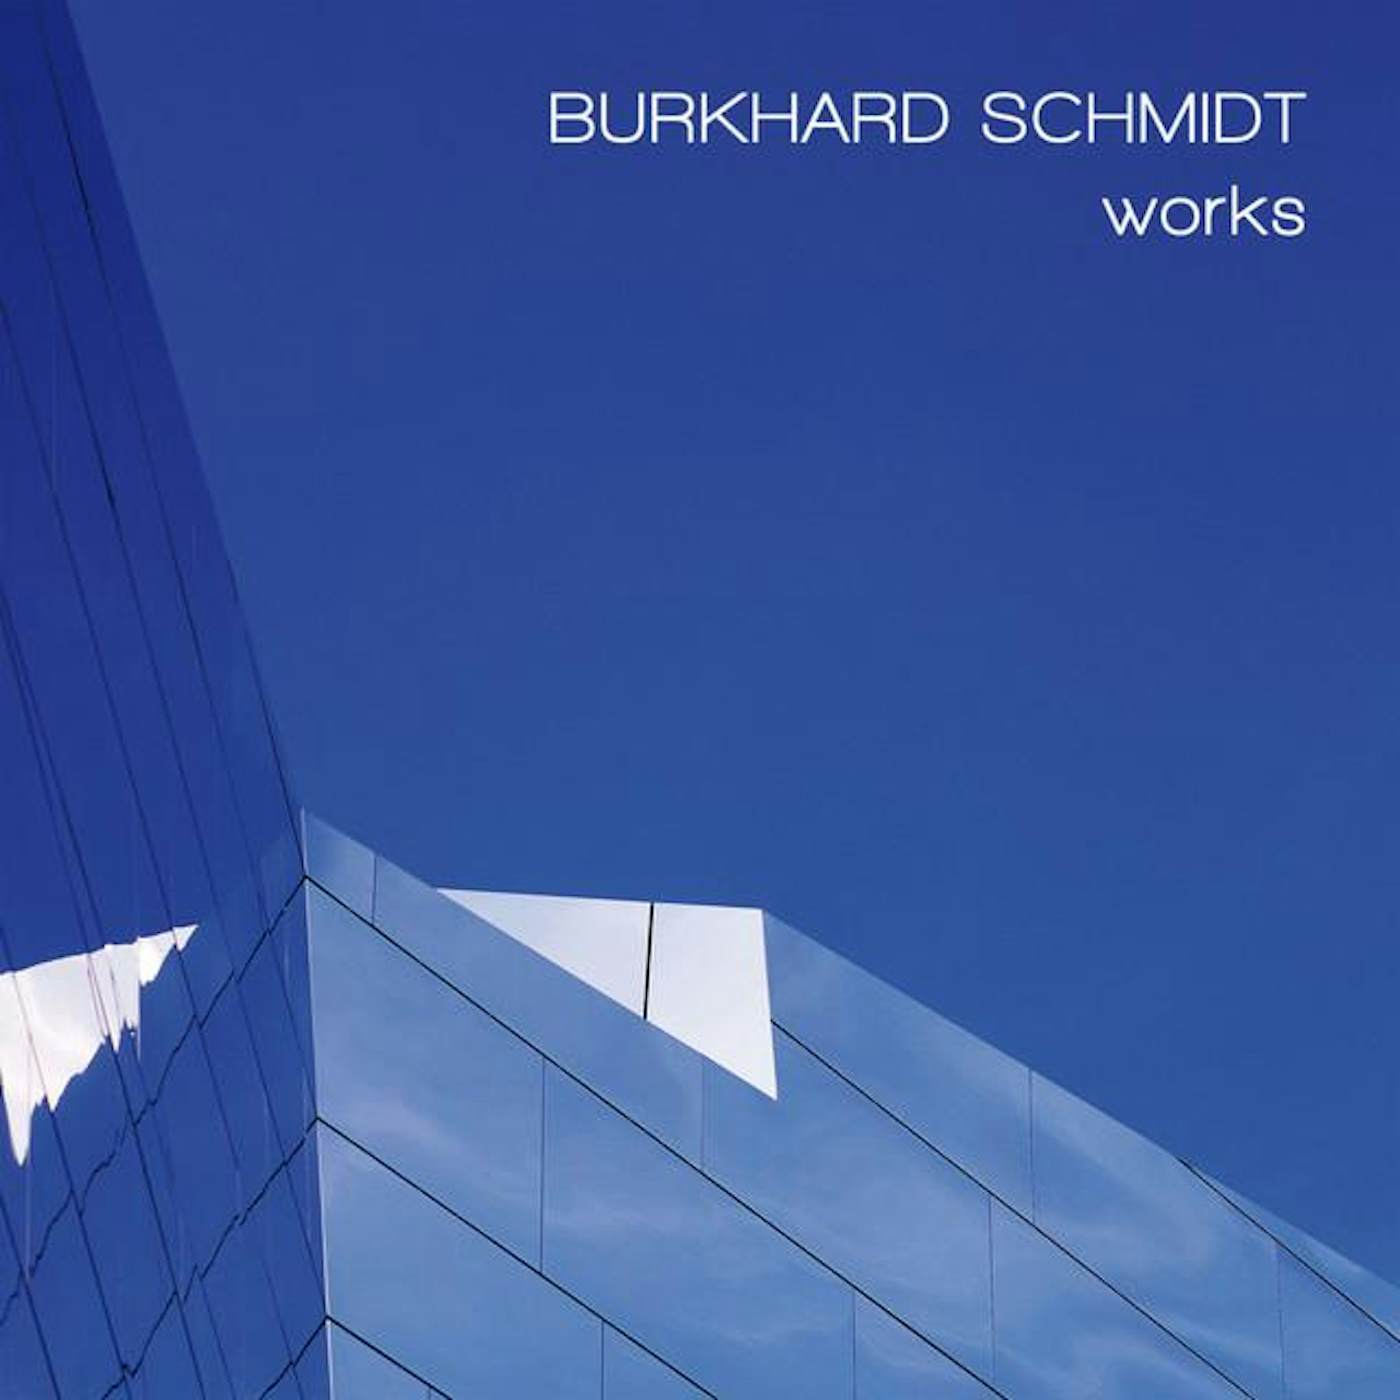 Burkhard Schmidt